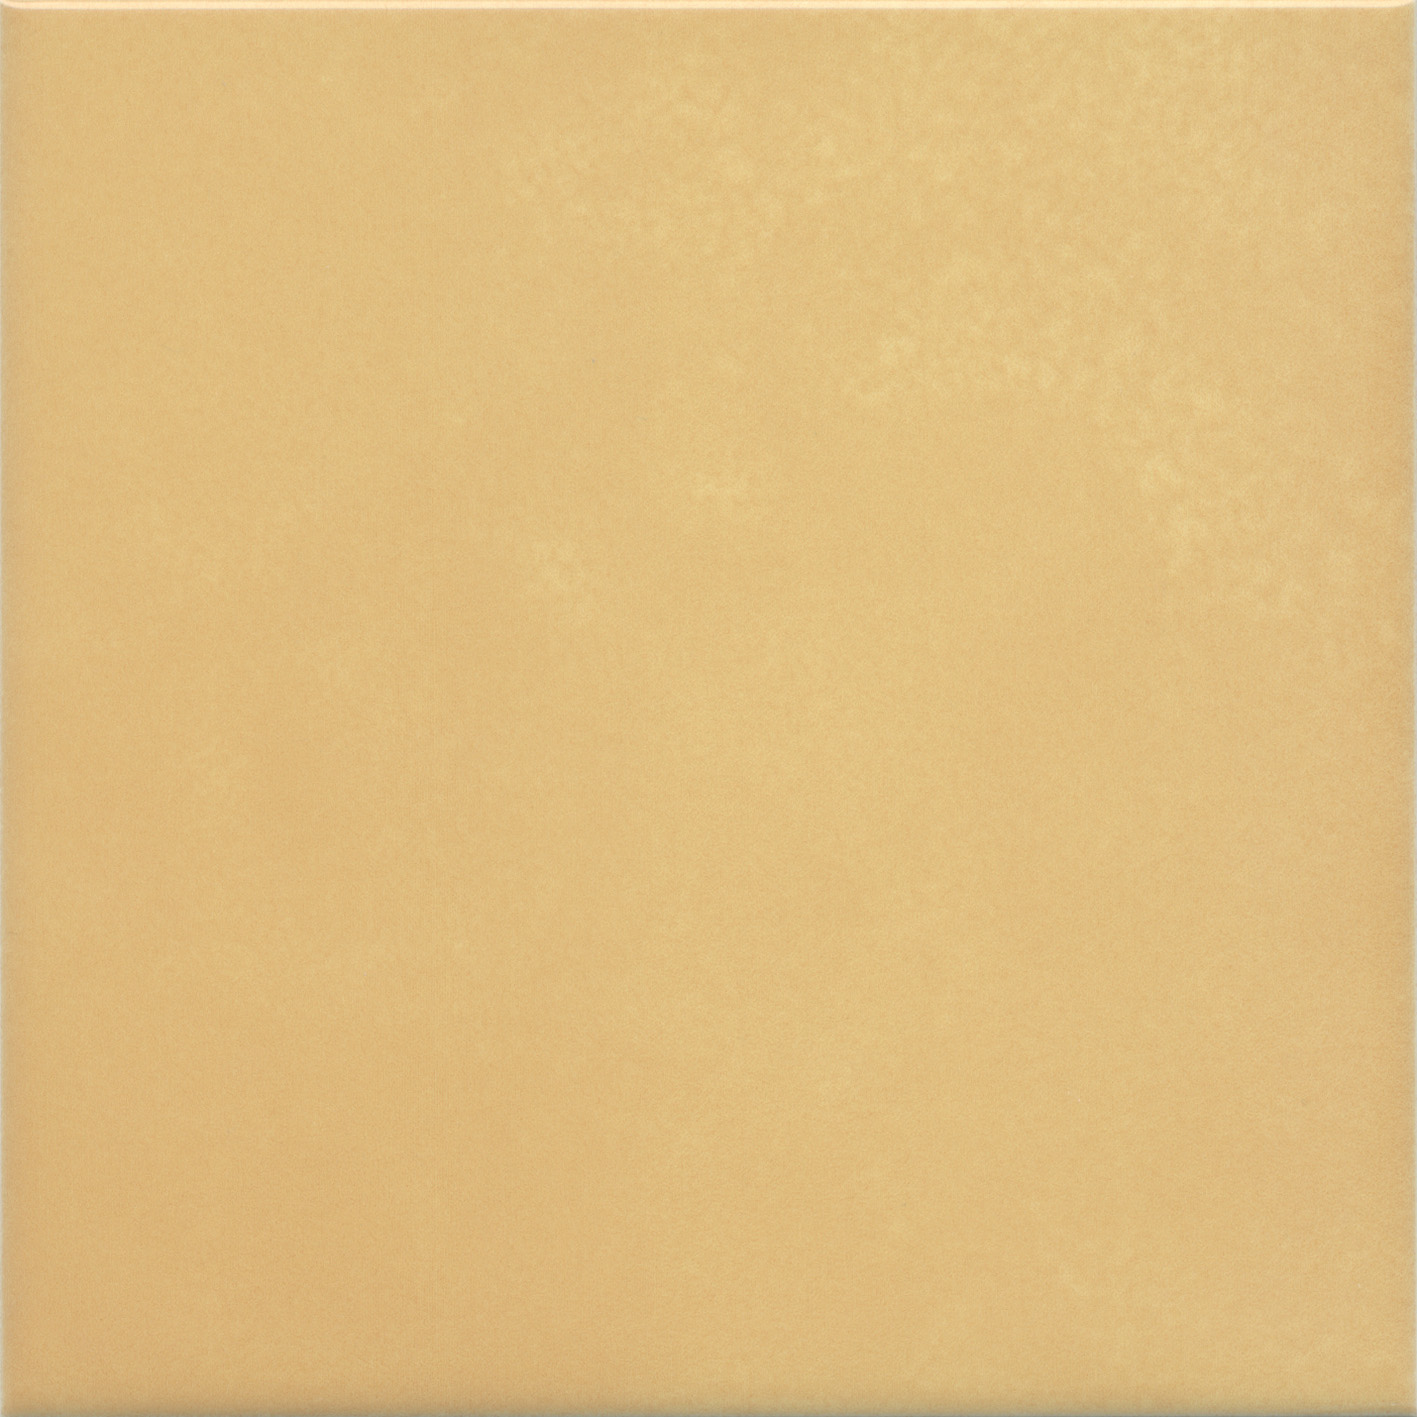 Плитка Kerama Marazzi Витраж желтый 17064 15x15 см плитка облицовочная нефрит террацио белая с крошкой 600x200x9 мм 10 шт 1 2 кв м